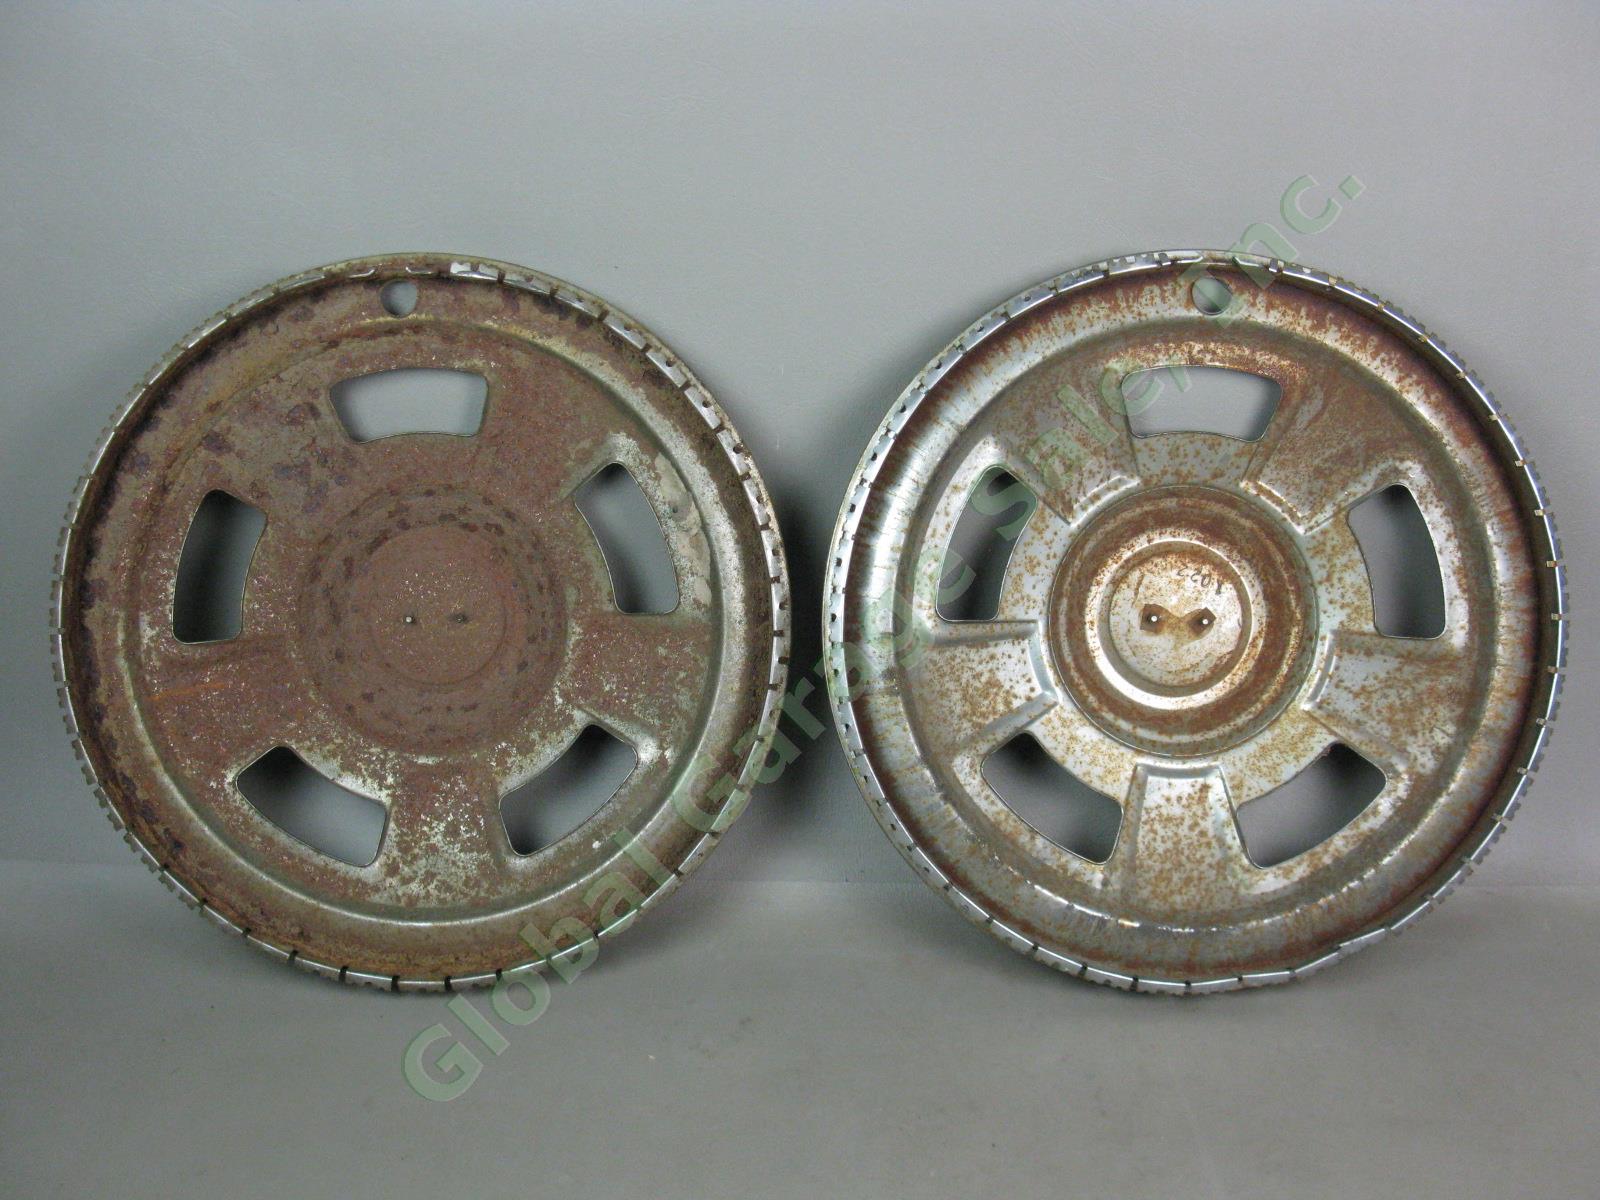 Rare Vtg Pair Original OEM Datsun 240Z D Type 14" Hub Caps Metal Wheel Covers NR 3